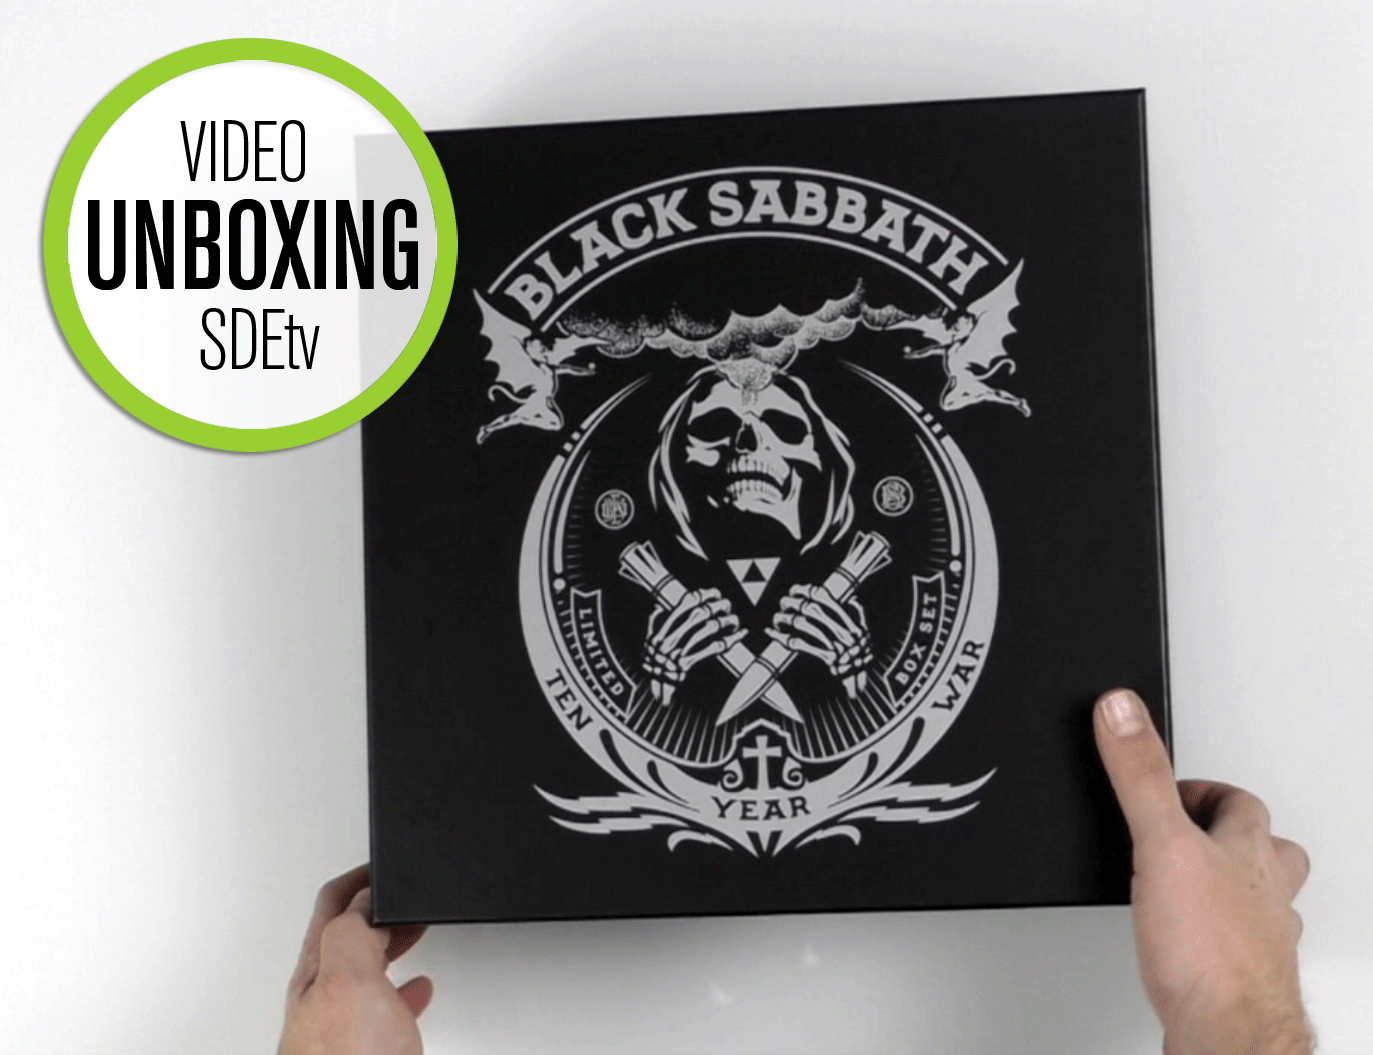 Black Sabbath / The Ten Year War 8LP vinyl unboxing video